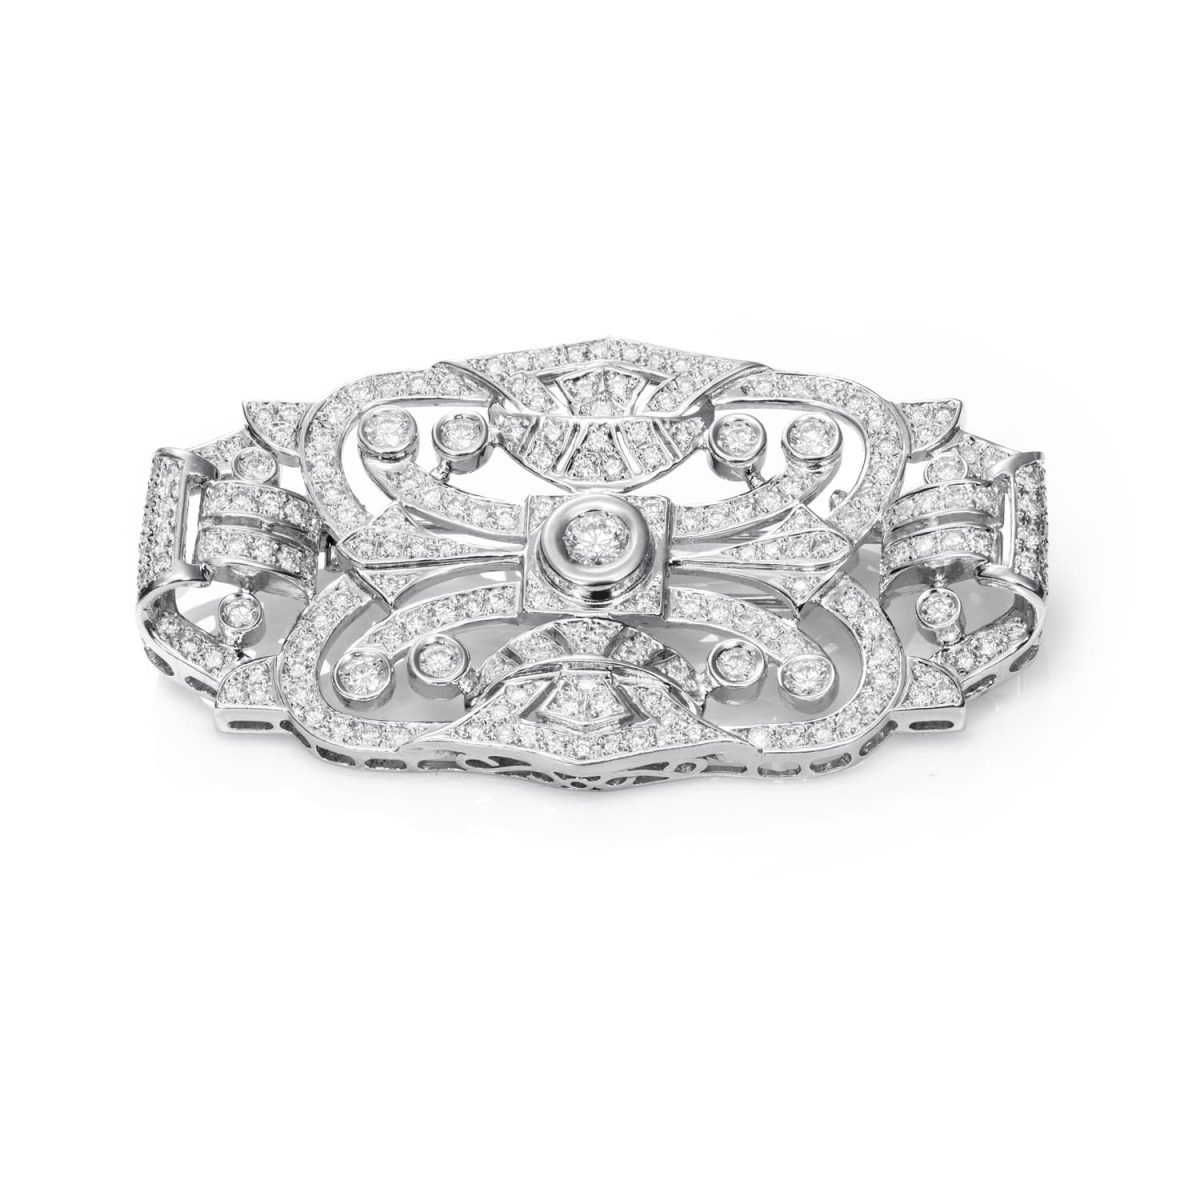 Broche Unique Broche de estilo Art Decó de oro blanco de 18K adornado con 6,80ct de diamantes talla brillante.